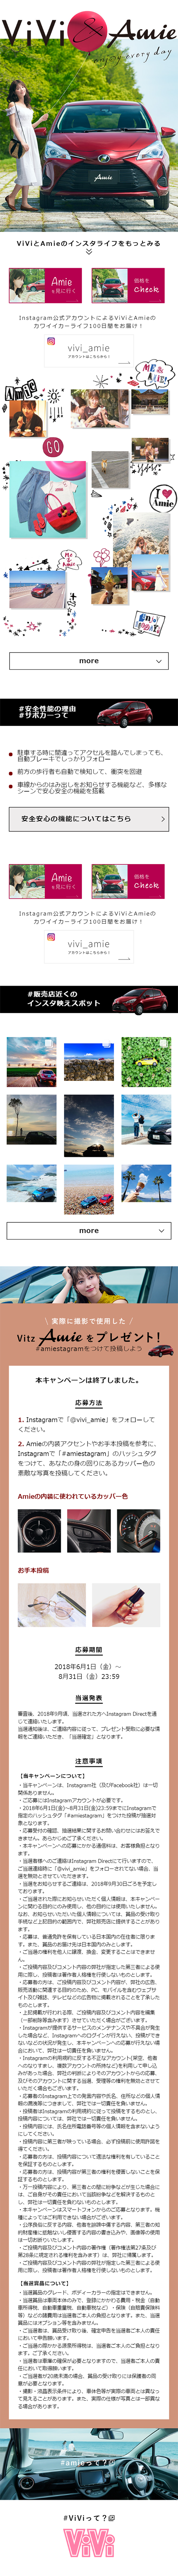 ViVi&Amieキャンペーン_sp_1